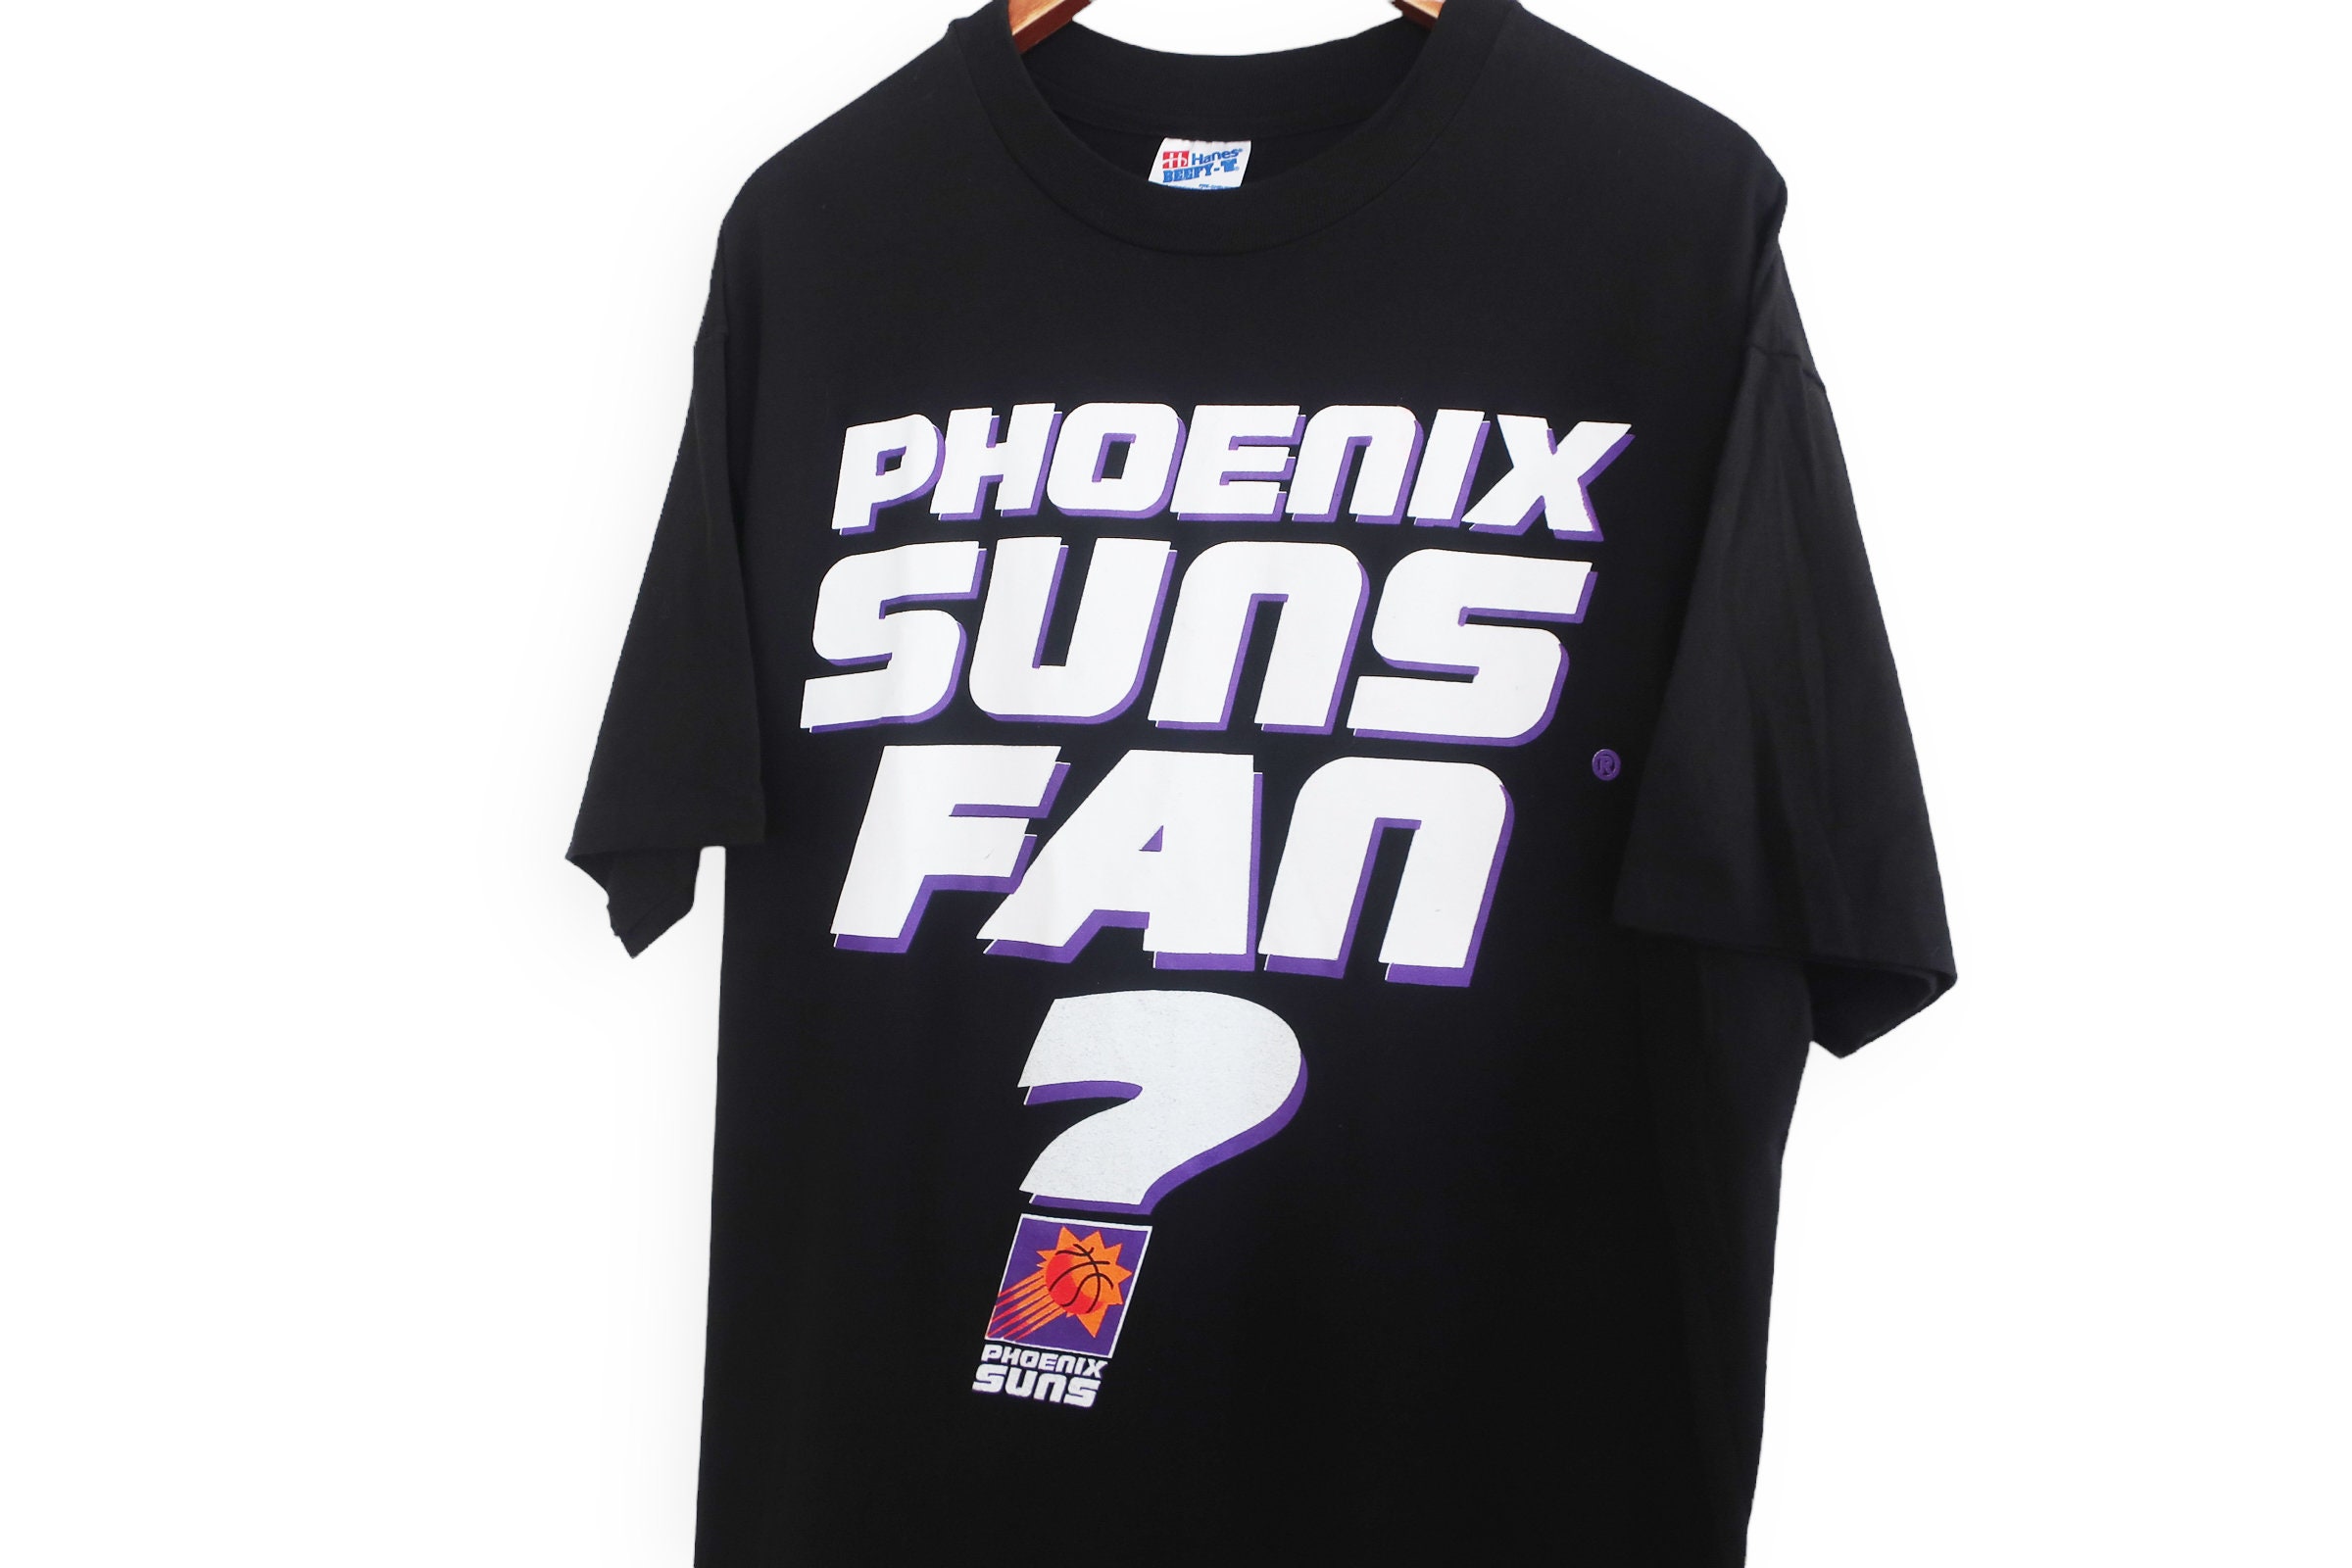 Suns X Warren Lotas the Final Shot Purple Skeleton T-shirt Suns in 4 ,  Phoenix Suns Shirt , Suns Shirt, Devin Booker, Nba Shirt UNISEX 